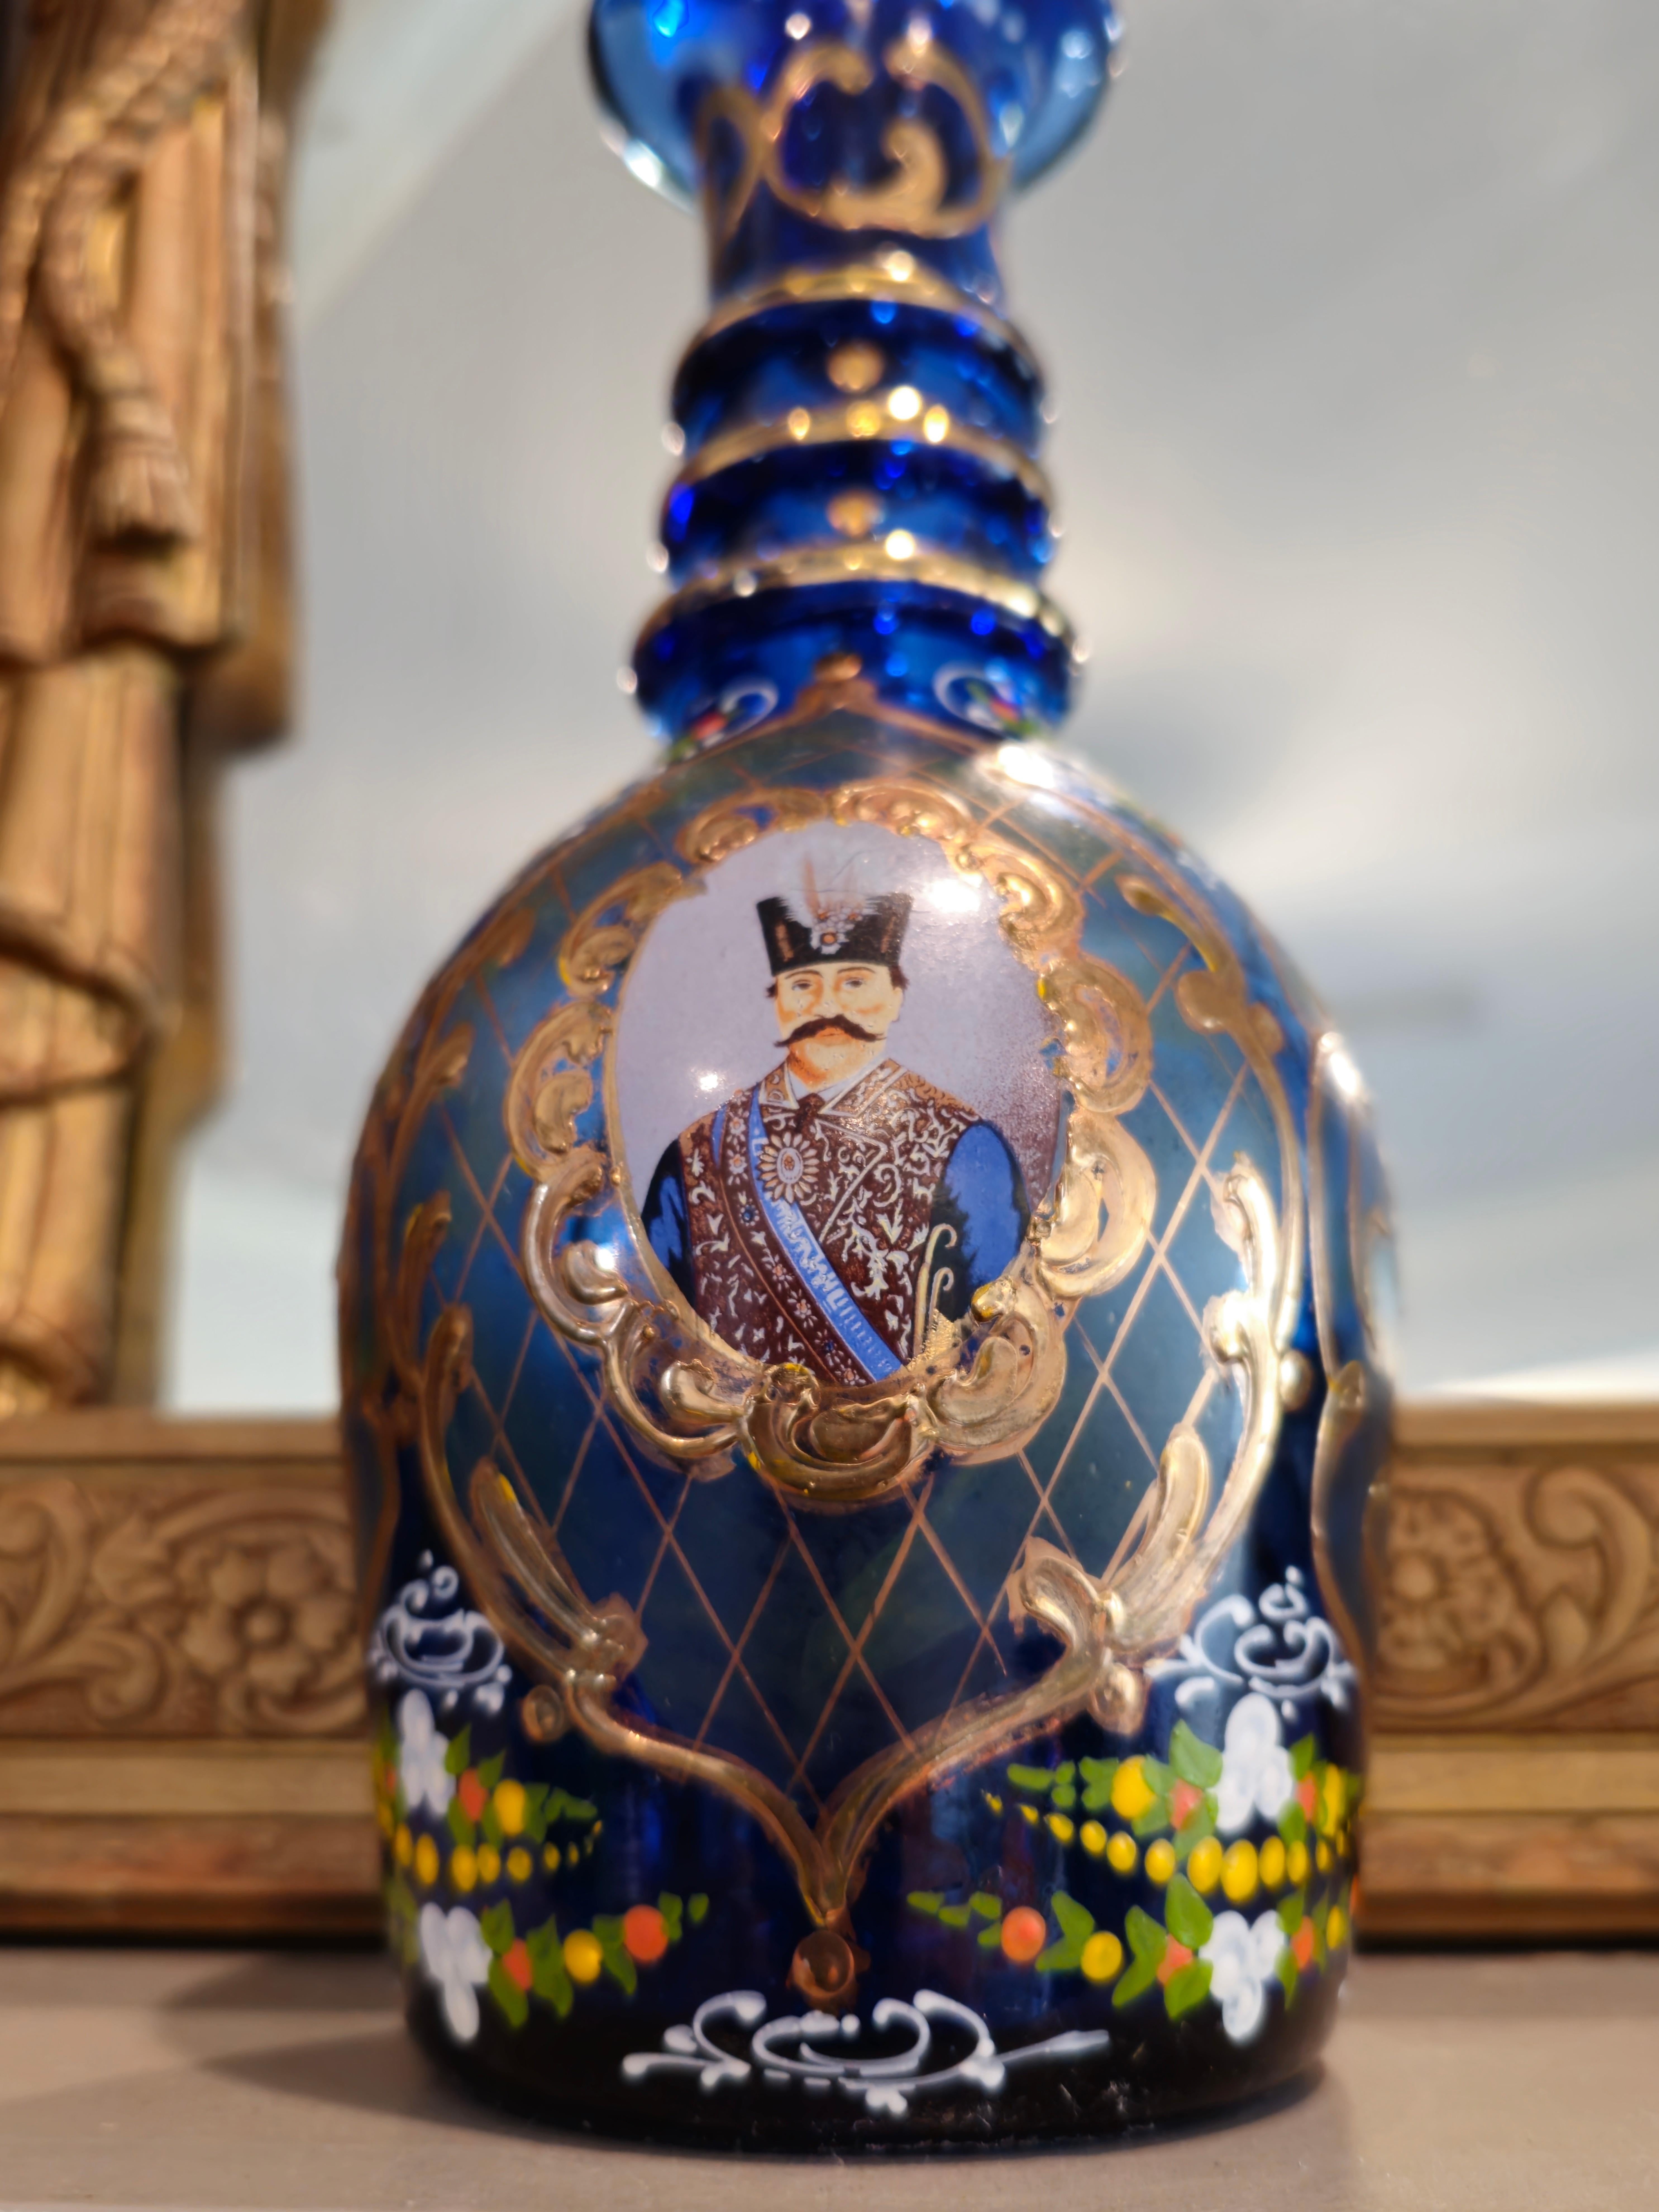 Art Nouveau 19th Century Bohemian Persian Market Qajar Enameled Gilt Cobalt Glass Decanters For Sale